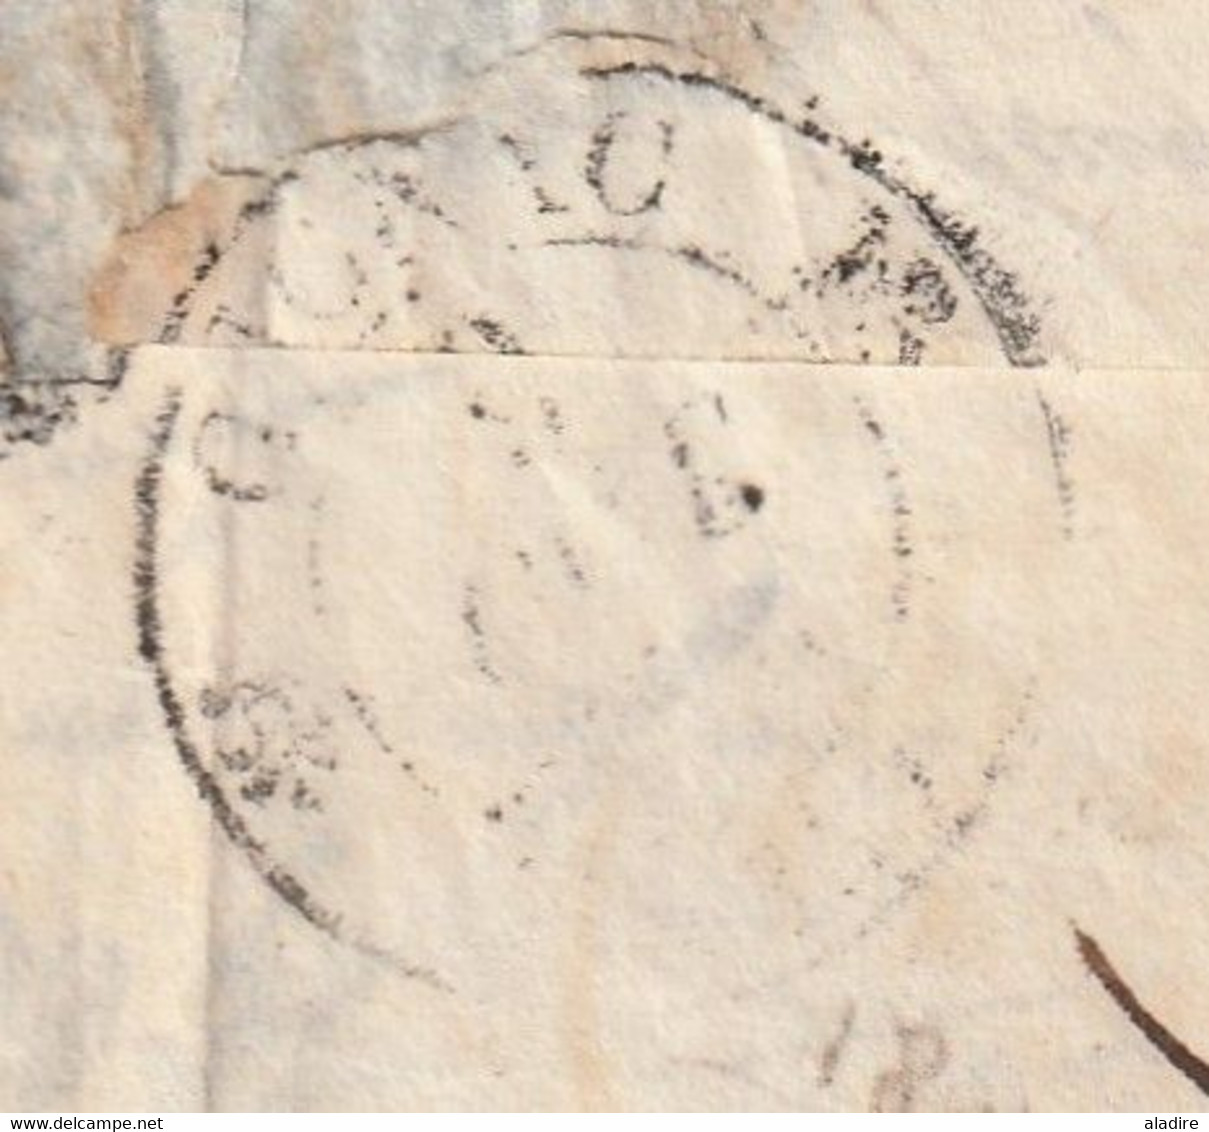 1832 - D4 Grand cachet à date type 12 simple fleuron sur Lettre de CANET postée à NARBONNE vers Aniane, Hérault